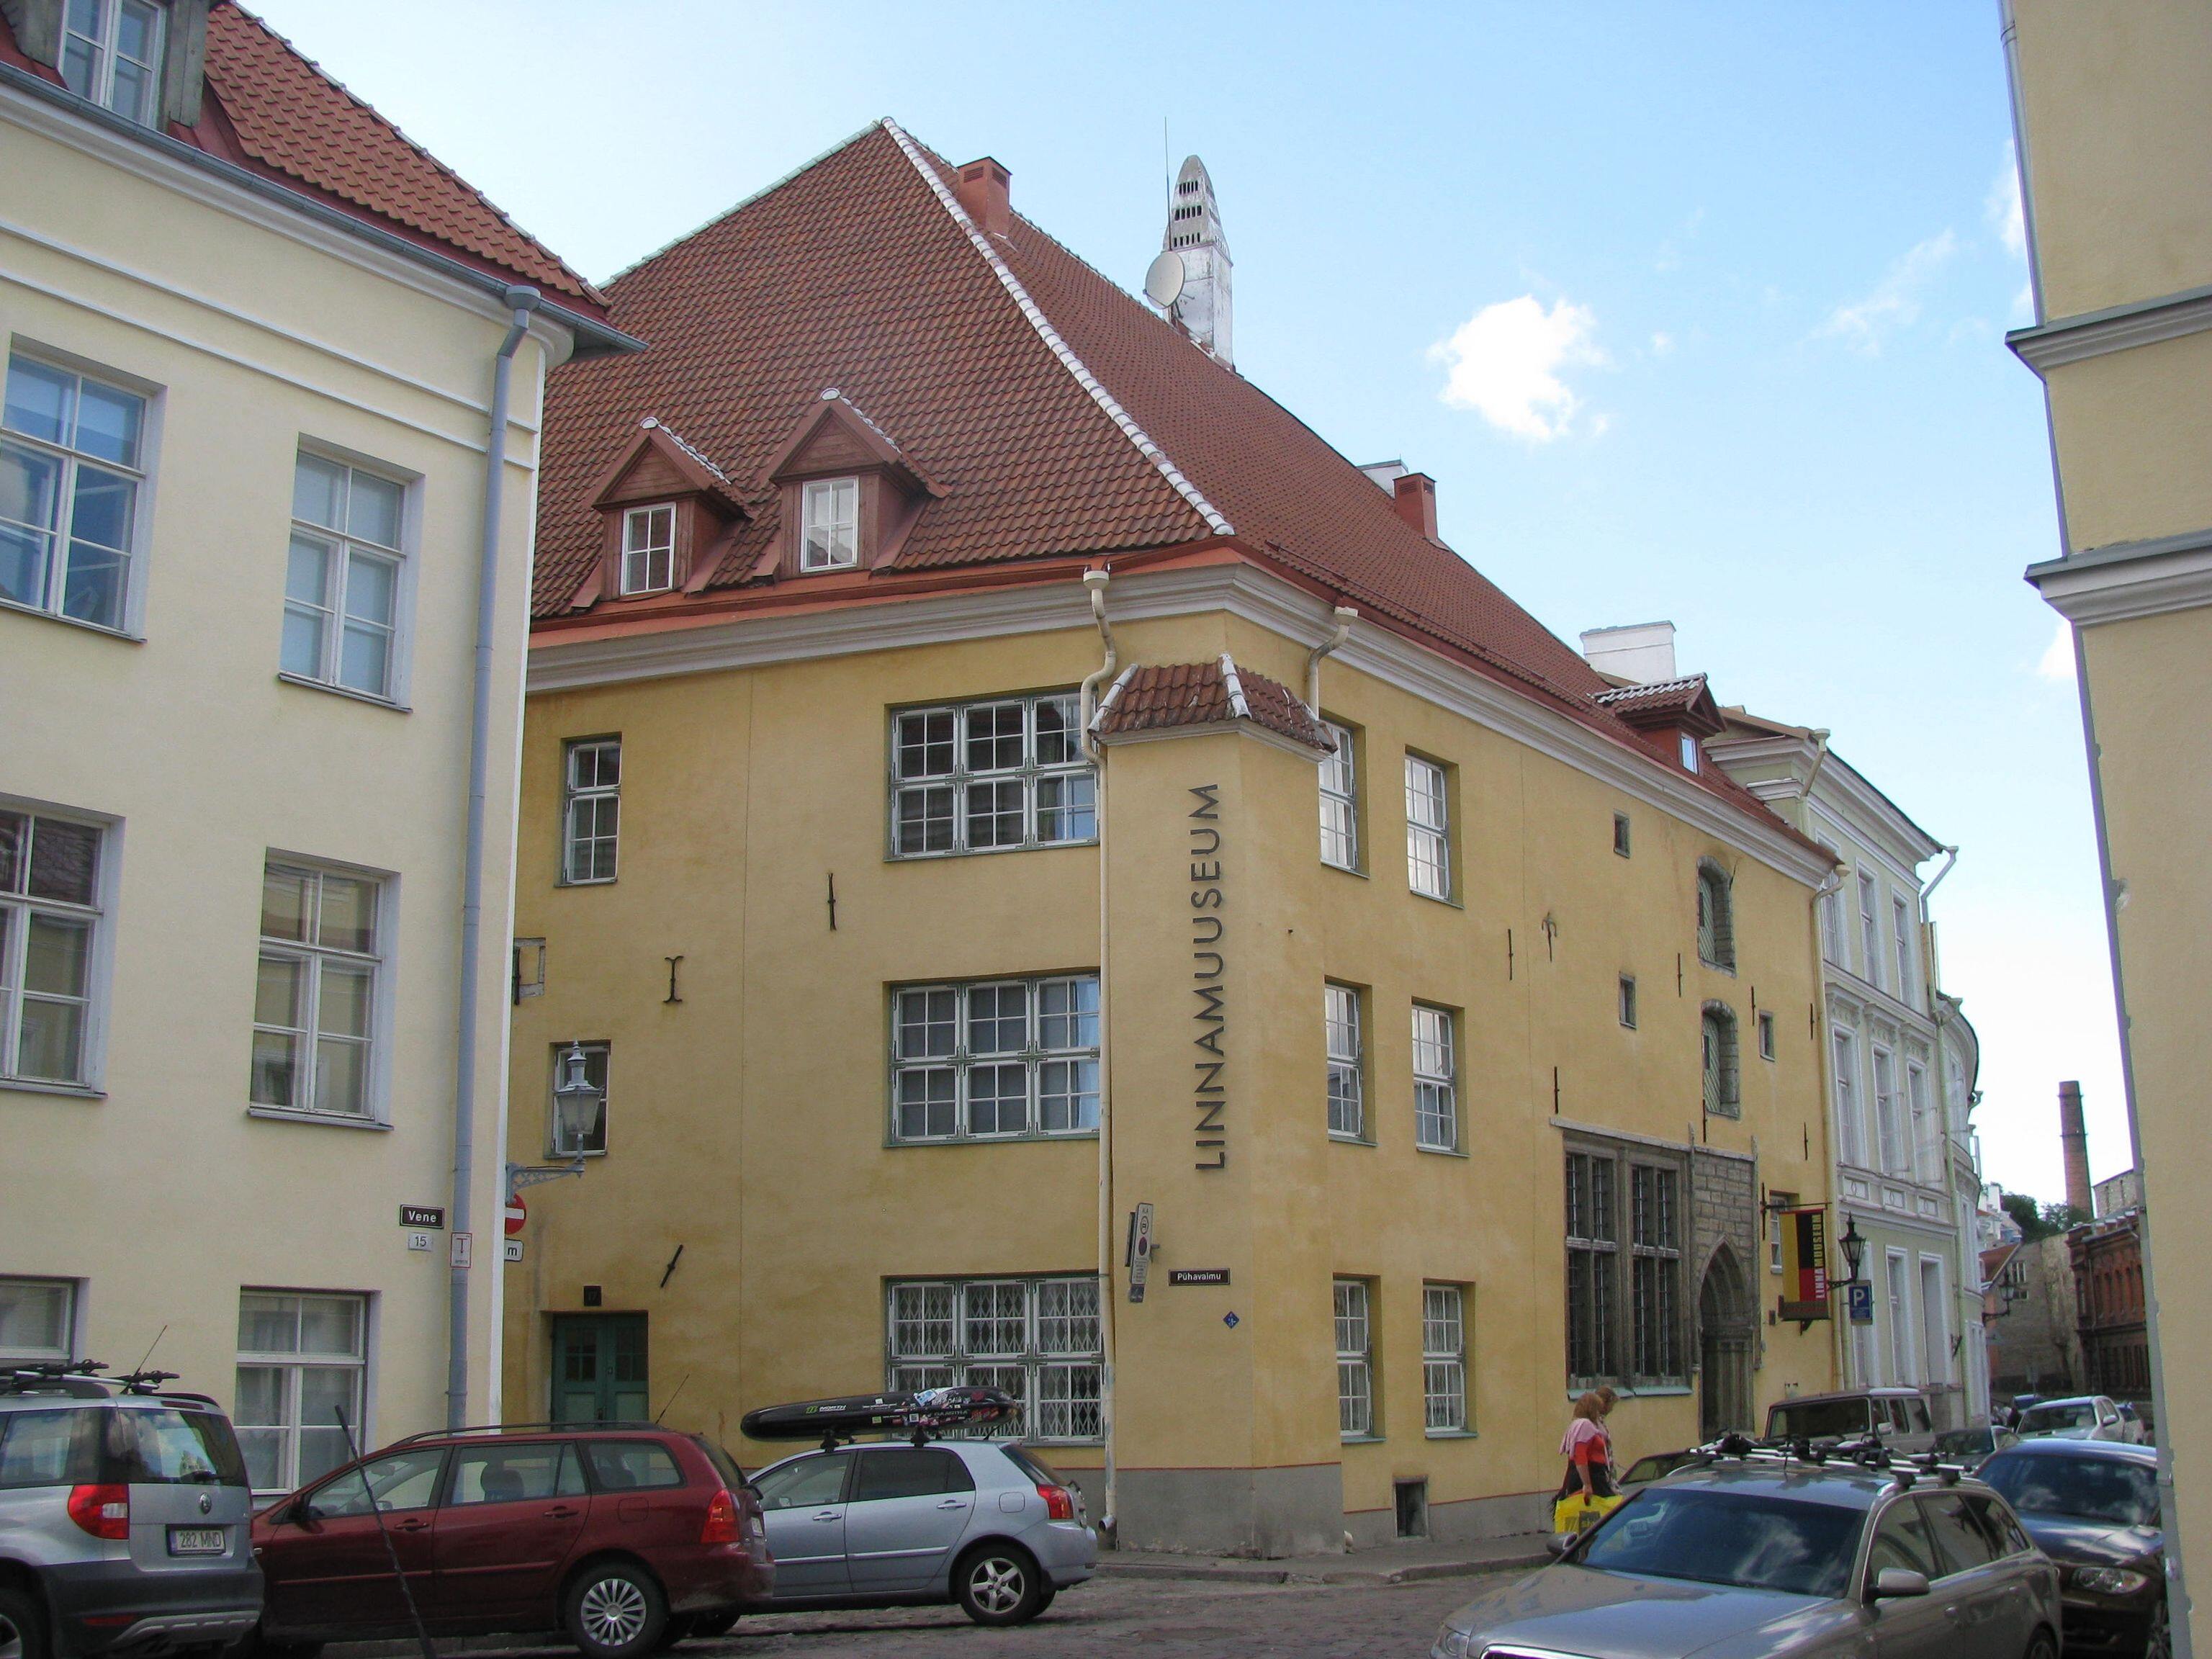 Tallinna Linnamuuseumi hoone Vene tänaval.